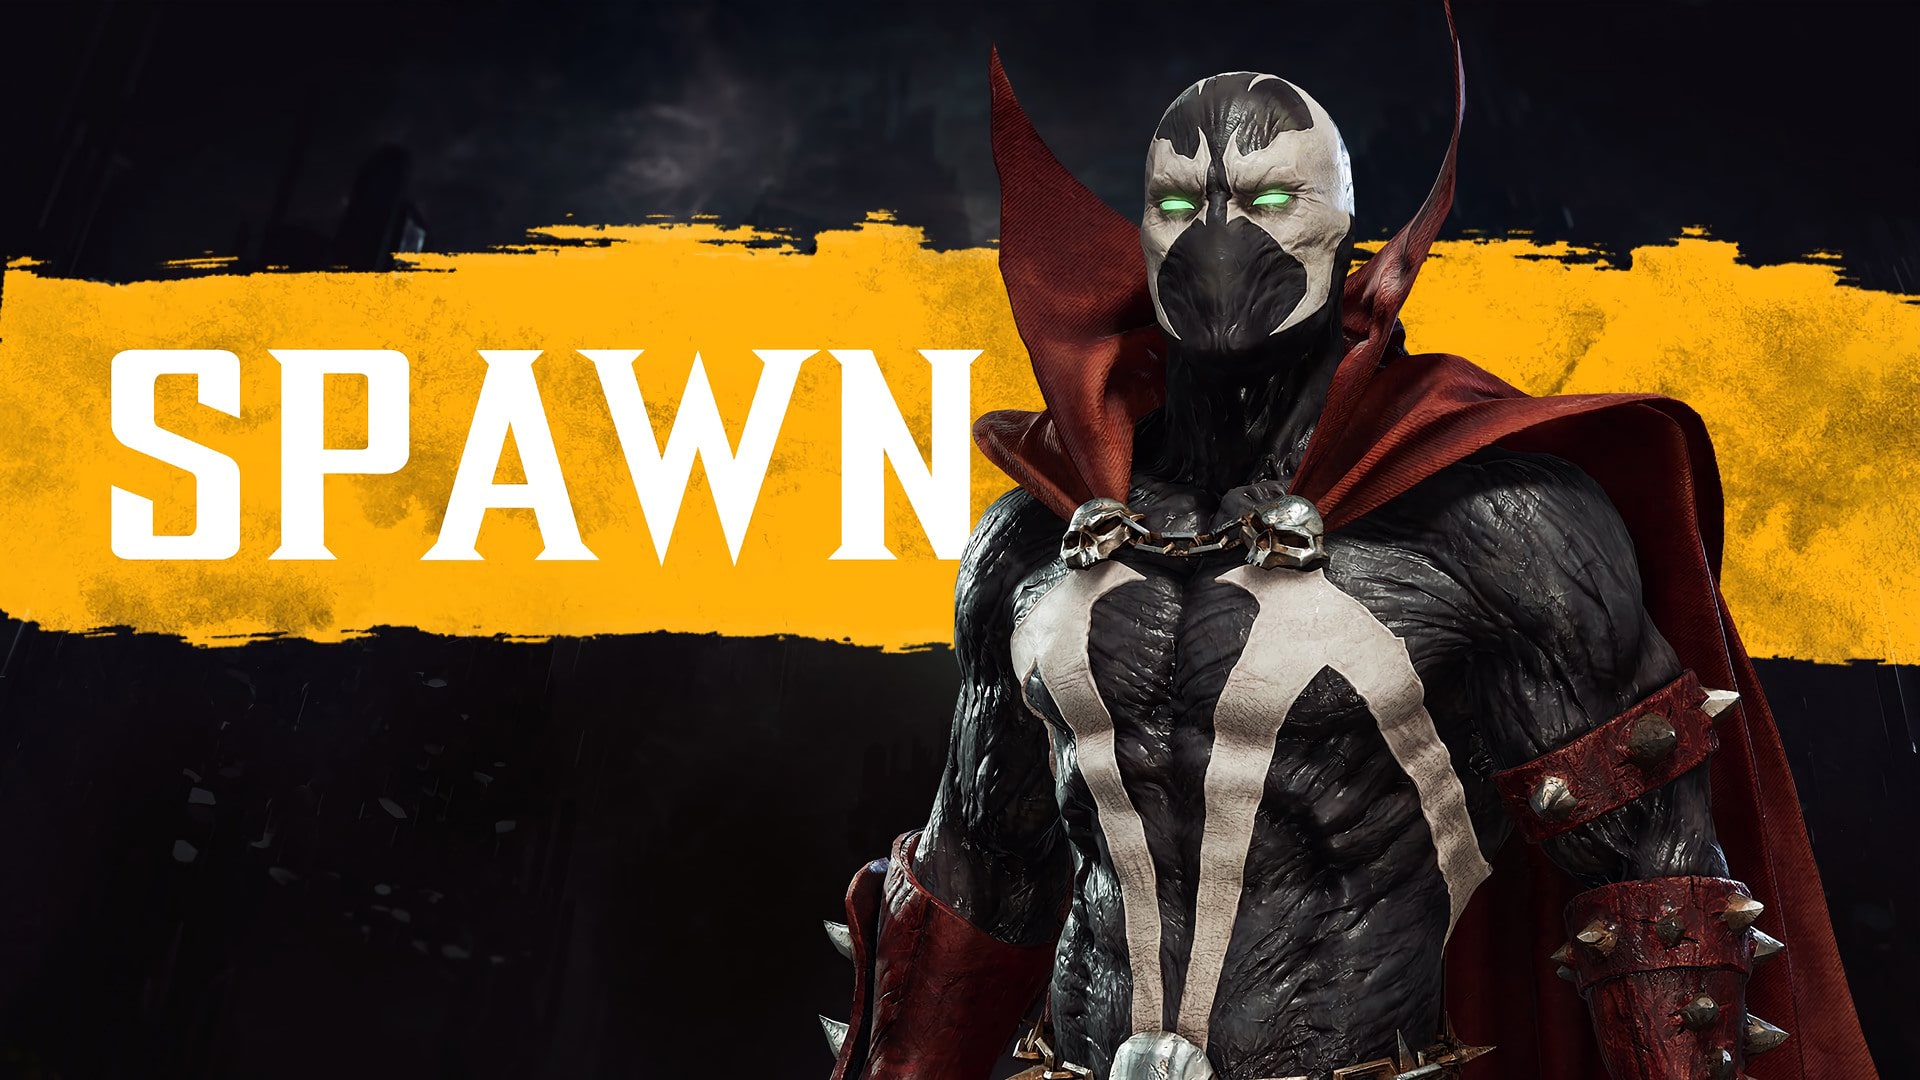 Mortal Kombat 11 Spawn Gameplay Trailer Revealed